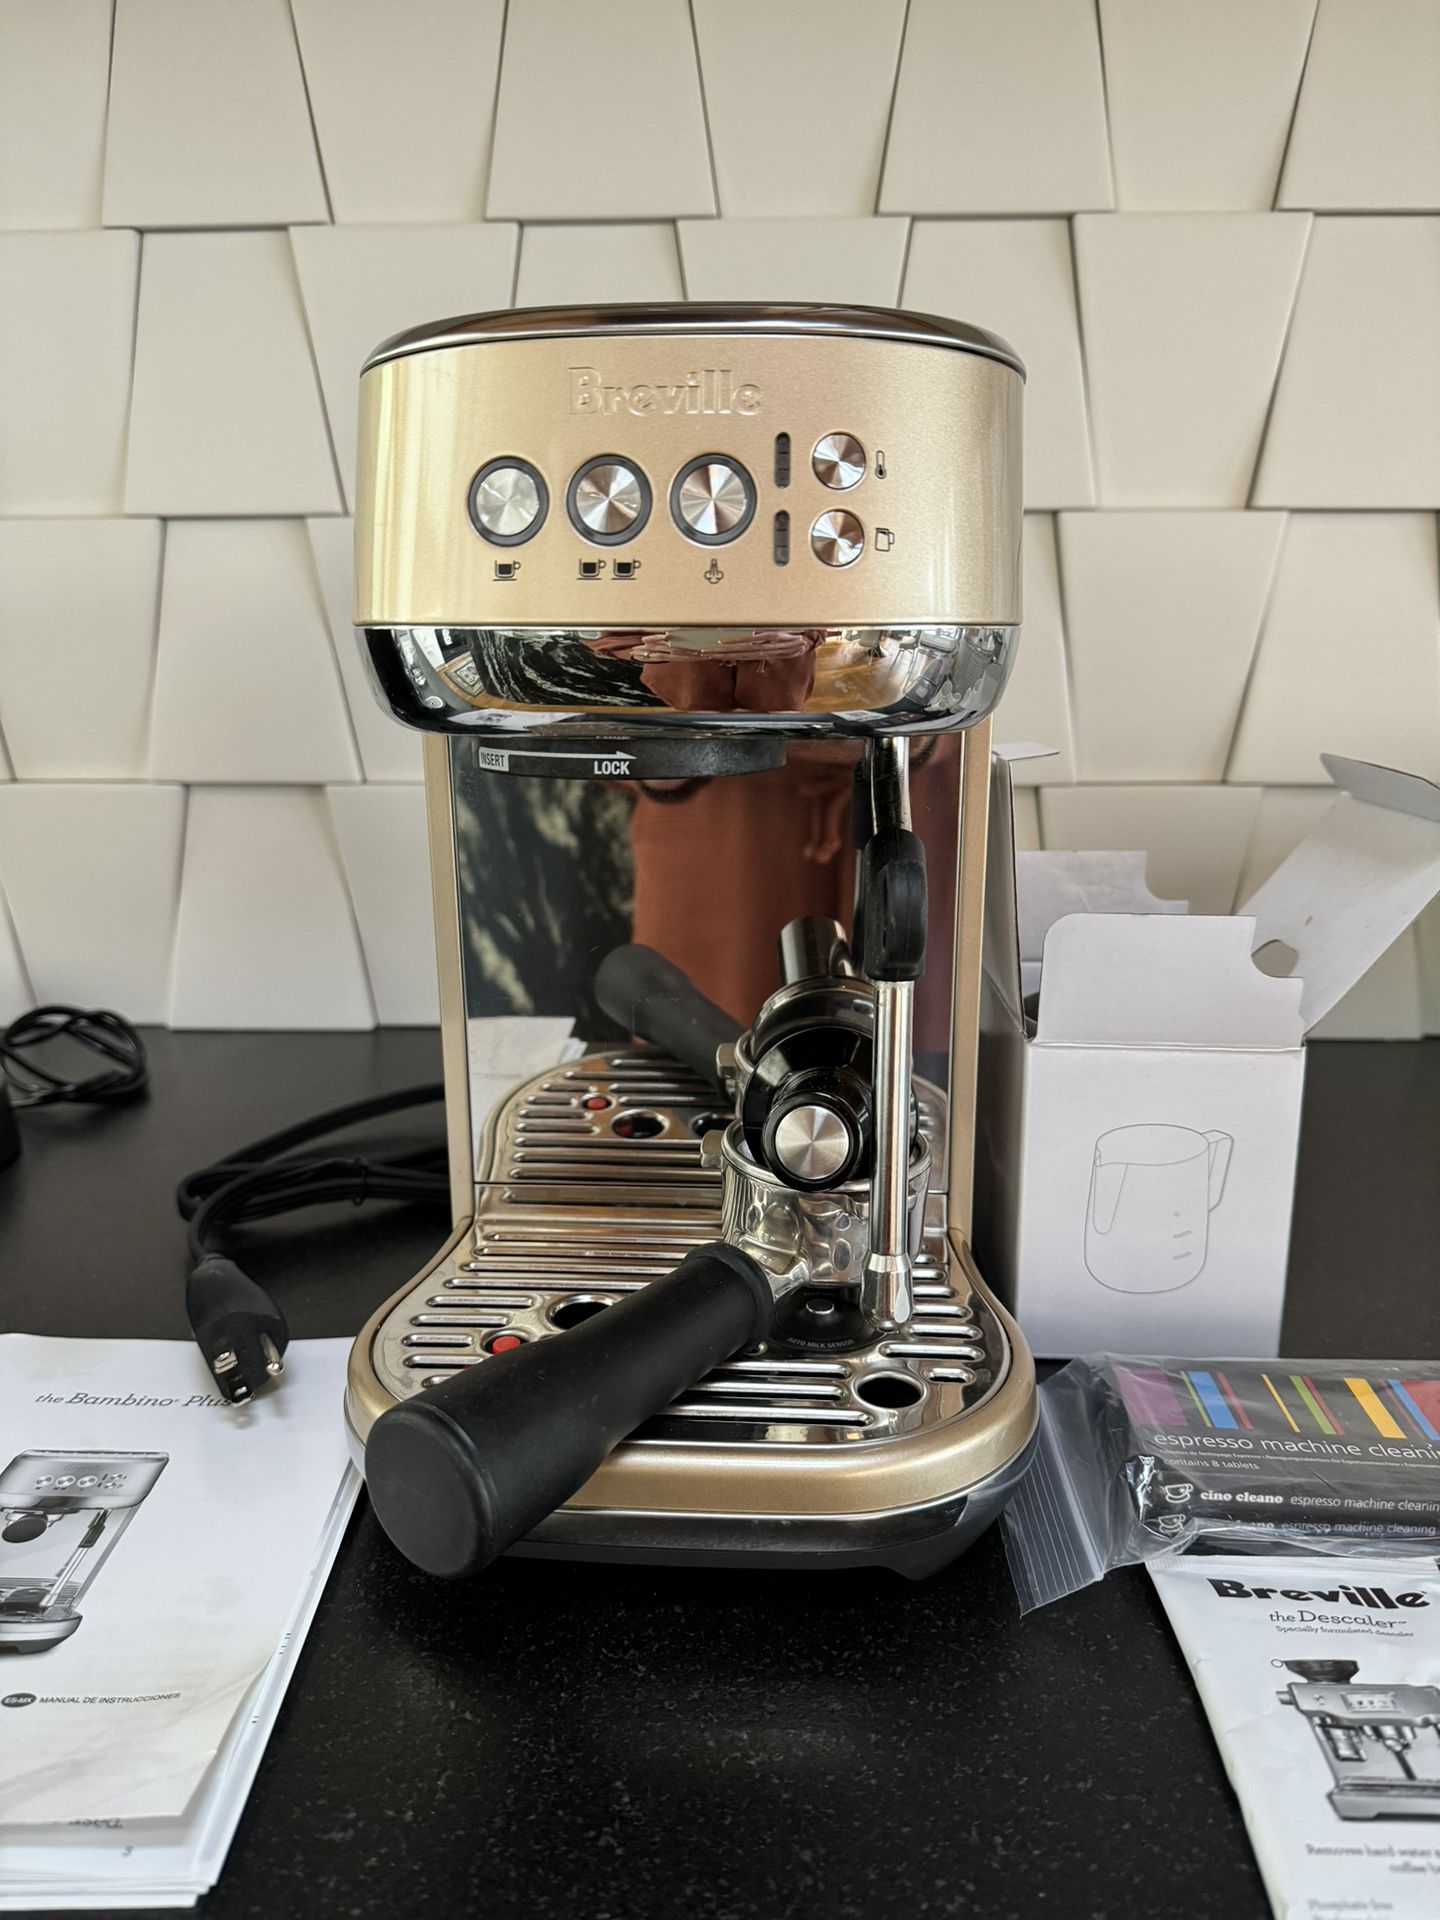 Brevile Bambino Plus Coffe Machine 